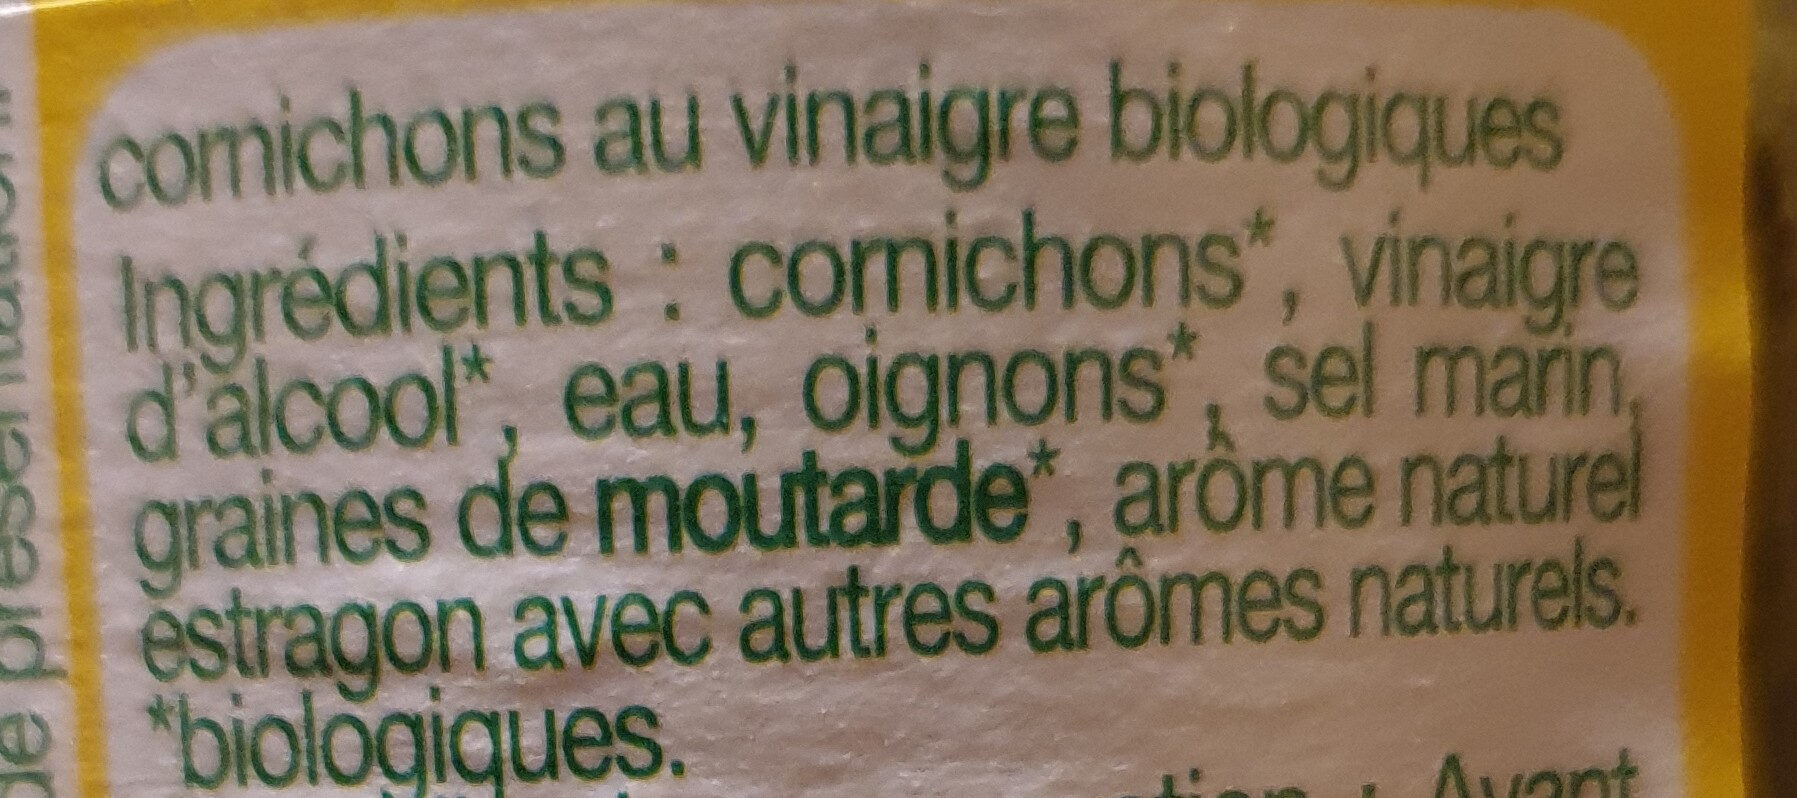 Cornichons au vinaigre - Ingrediënten - fr